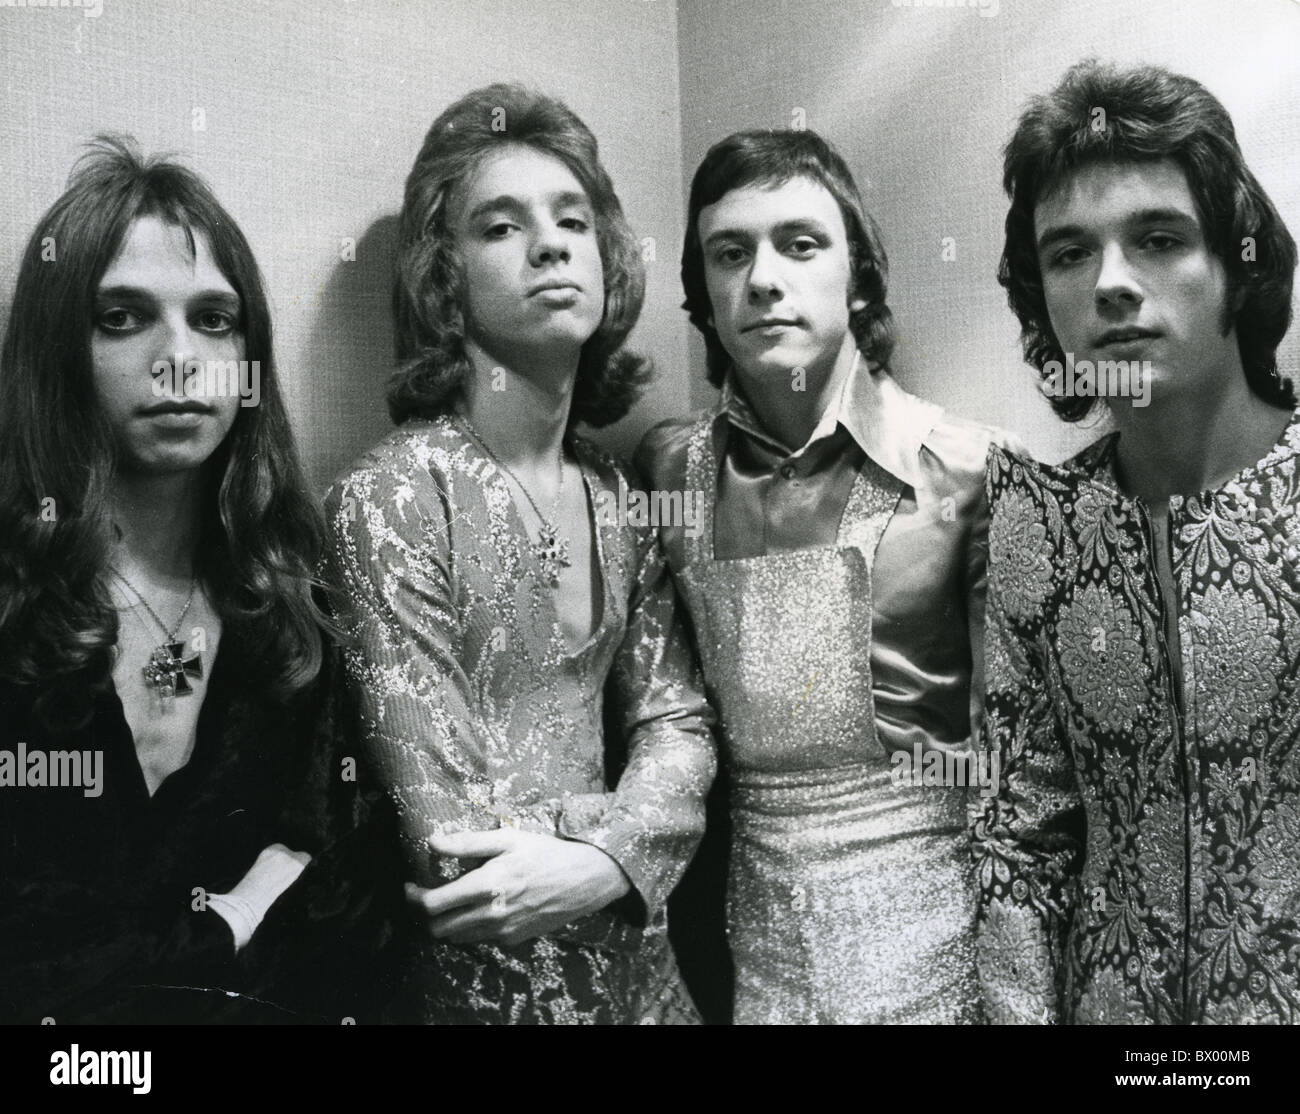 Bonjour photo de promotion du groupe de glam rock britannique de 1972 sur l : Keith Marshall, Bob Bradbury, Jeff Allen et Vic Faulkner Banque D'Images